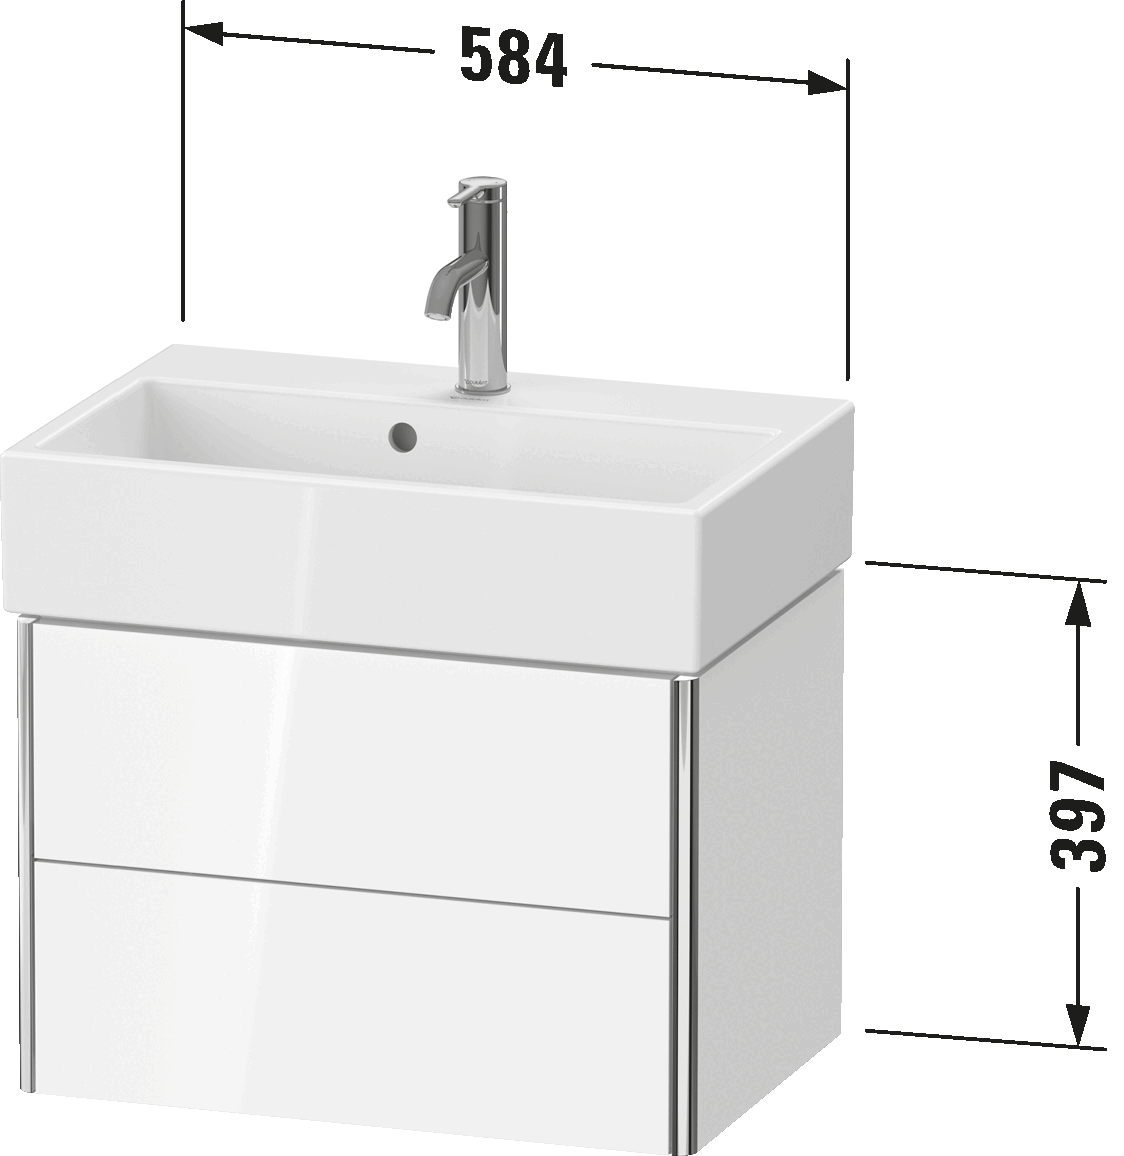 ארון אמבטיה תלוי על הקיר, XS4307